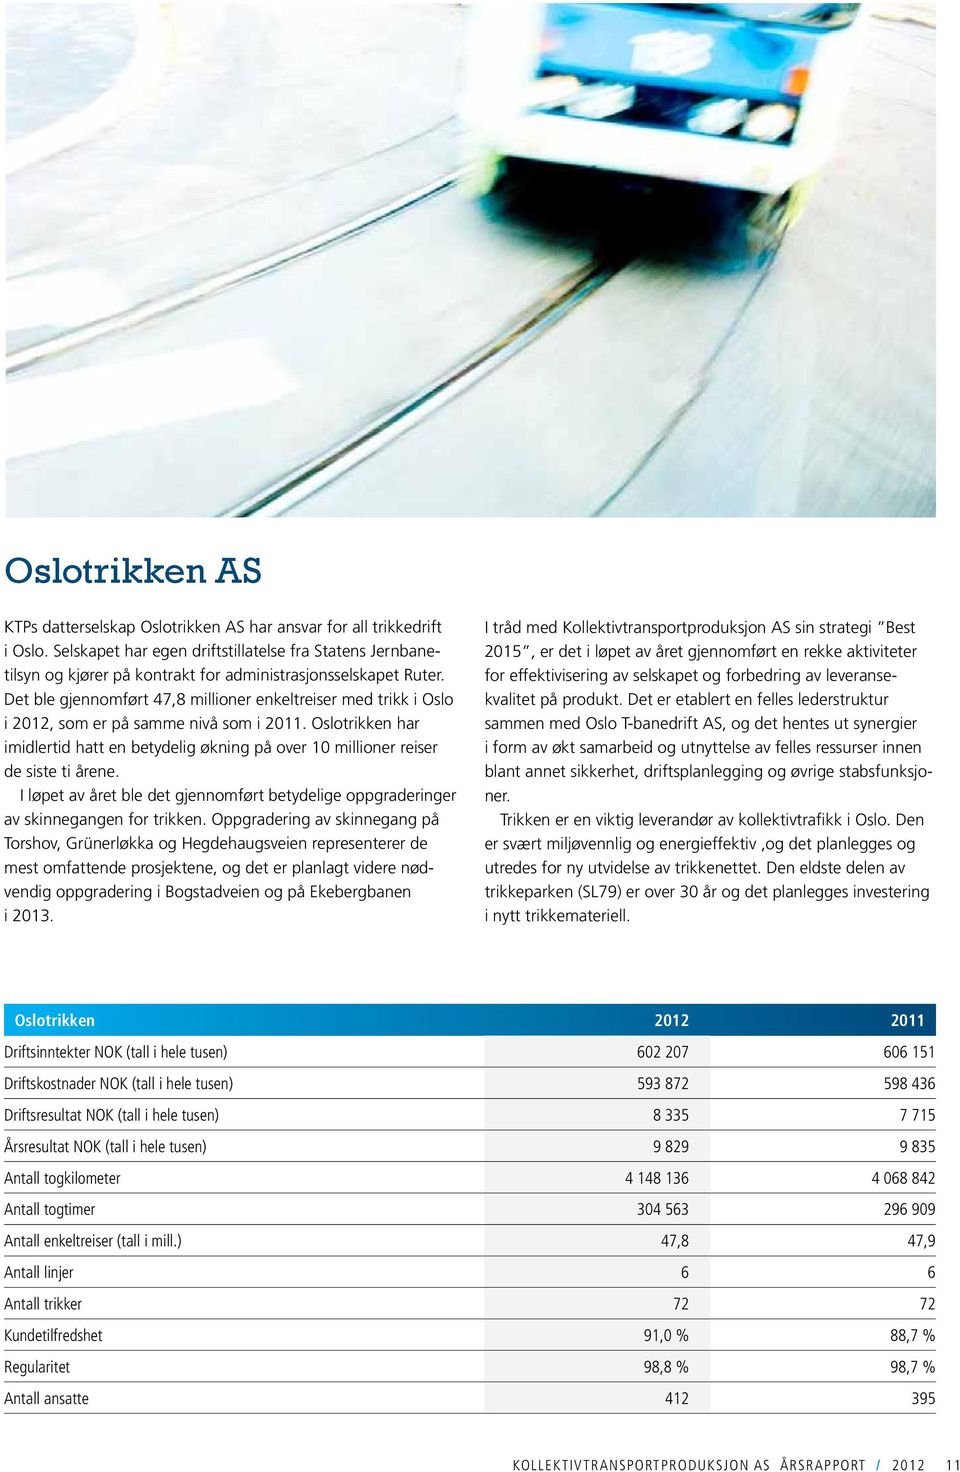 Det ble gjennomført 47,8 millioner enkeltreiser med trikk i Oslo i 2012, som er på samme nivå som i 2011.